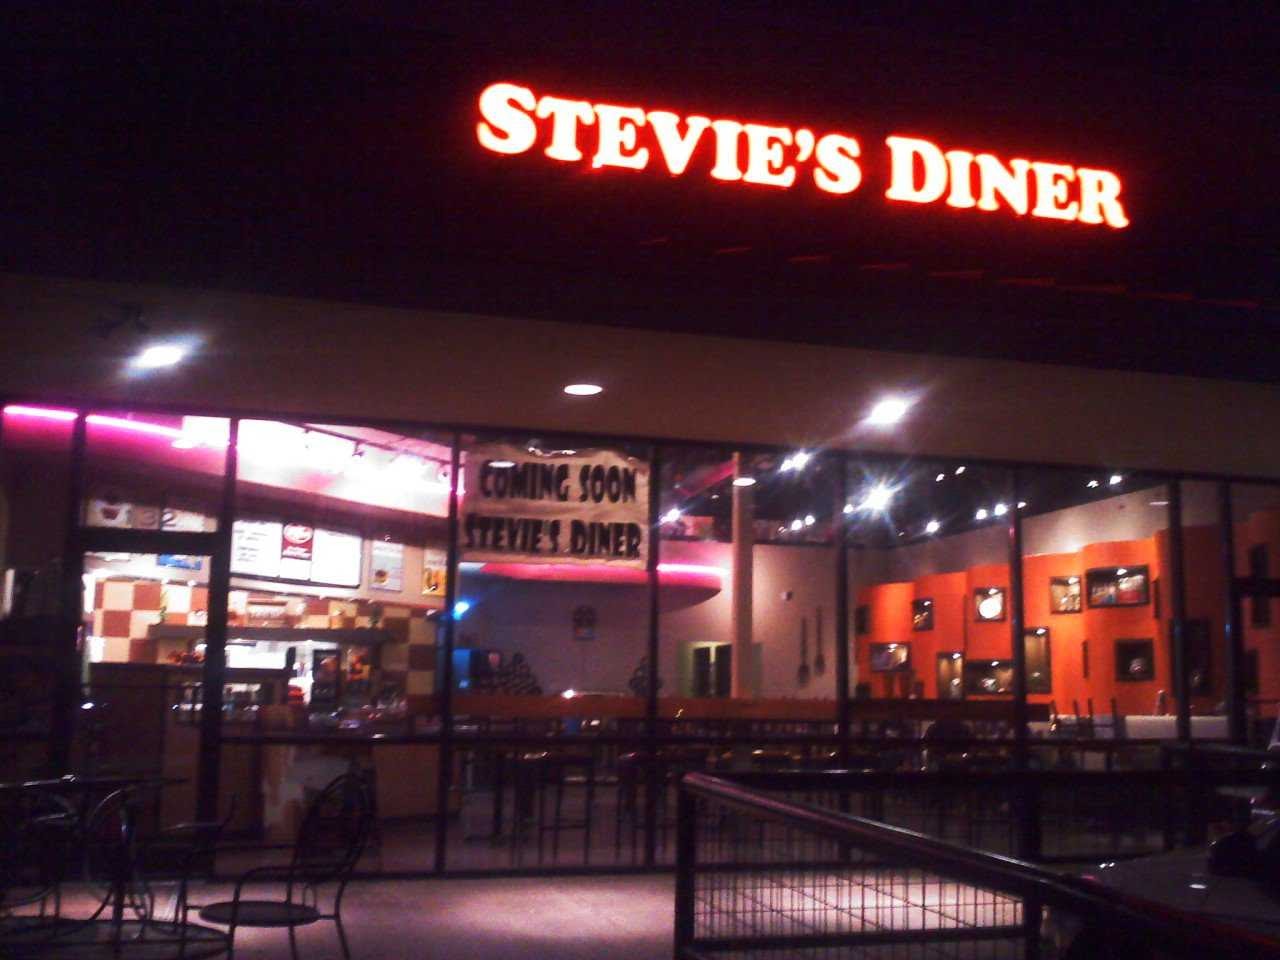 Stevie's Diner